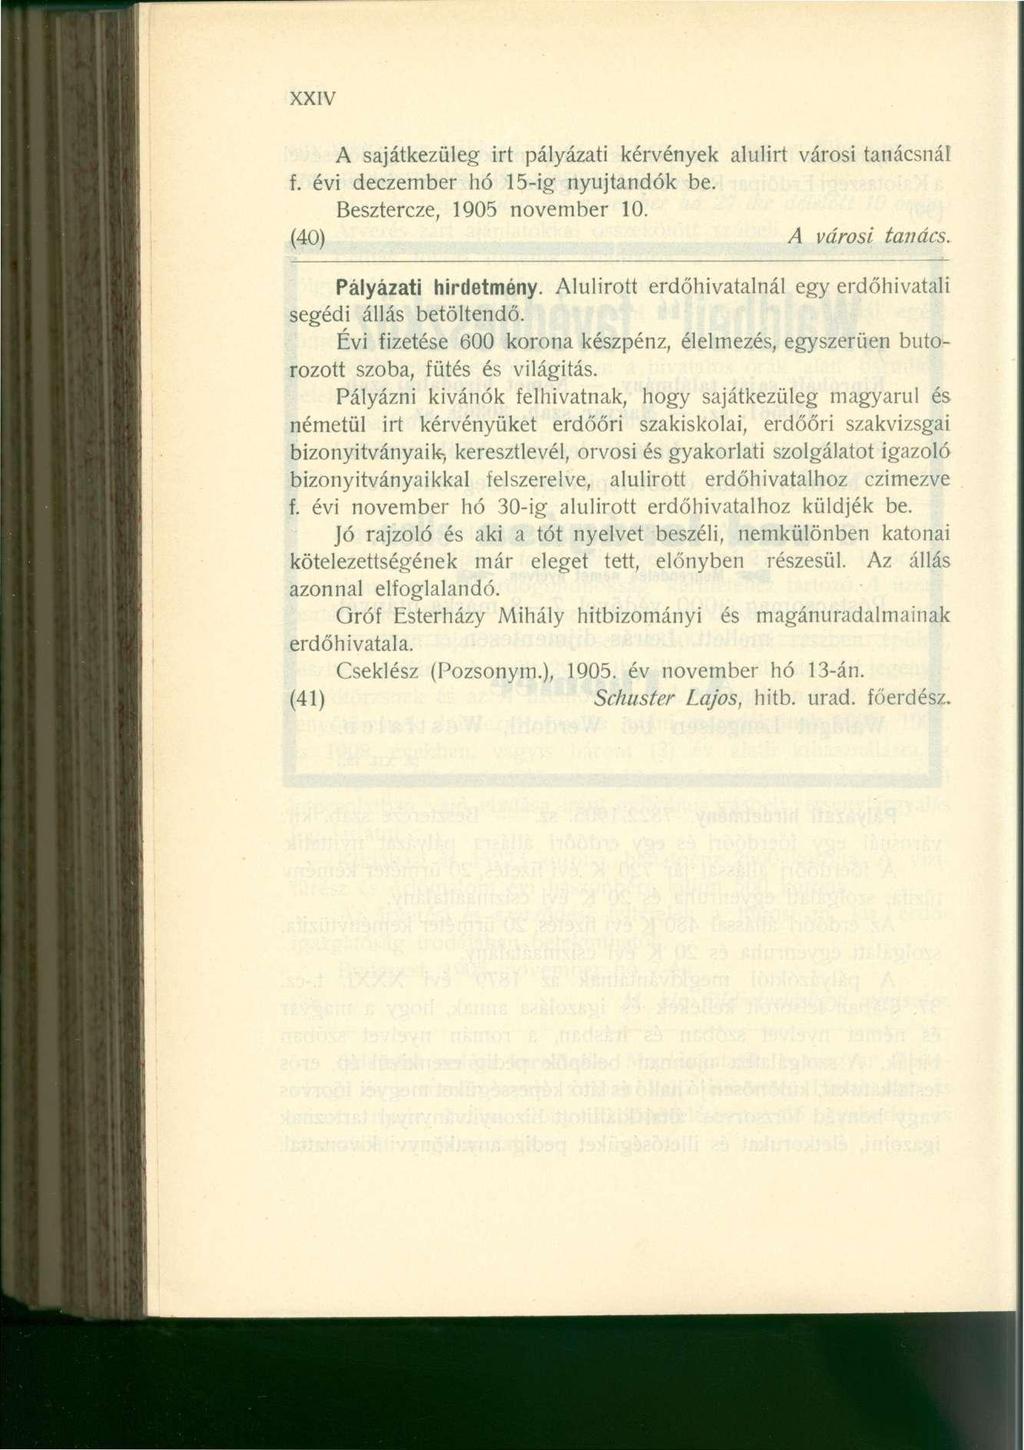 XXIV A sajátkezüleg irt pályázati kérvények alulirt városi tanácsnál f. évi deczember hó 15-ig nyújtandók be. Besztercze, 1905 november 10. (40) A városi tanács. Pályázati hirdetmény.